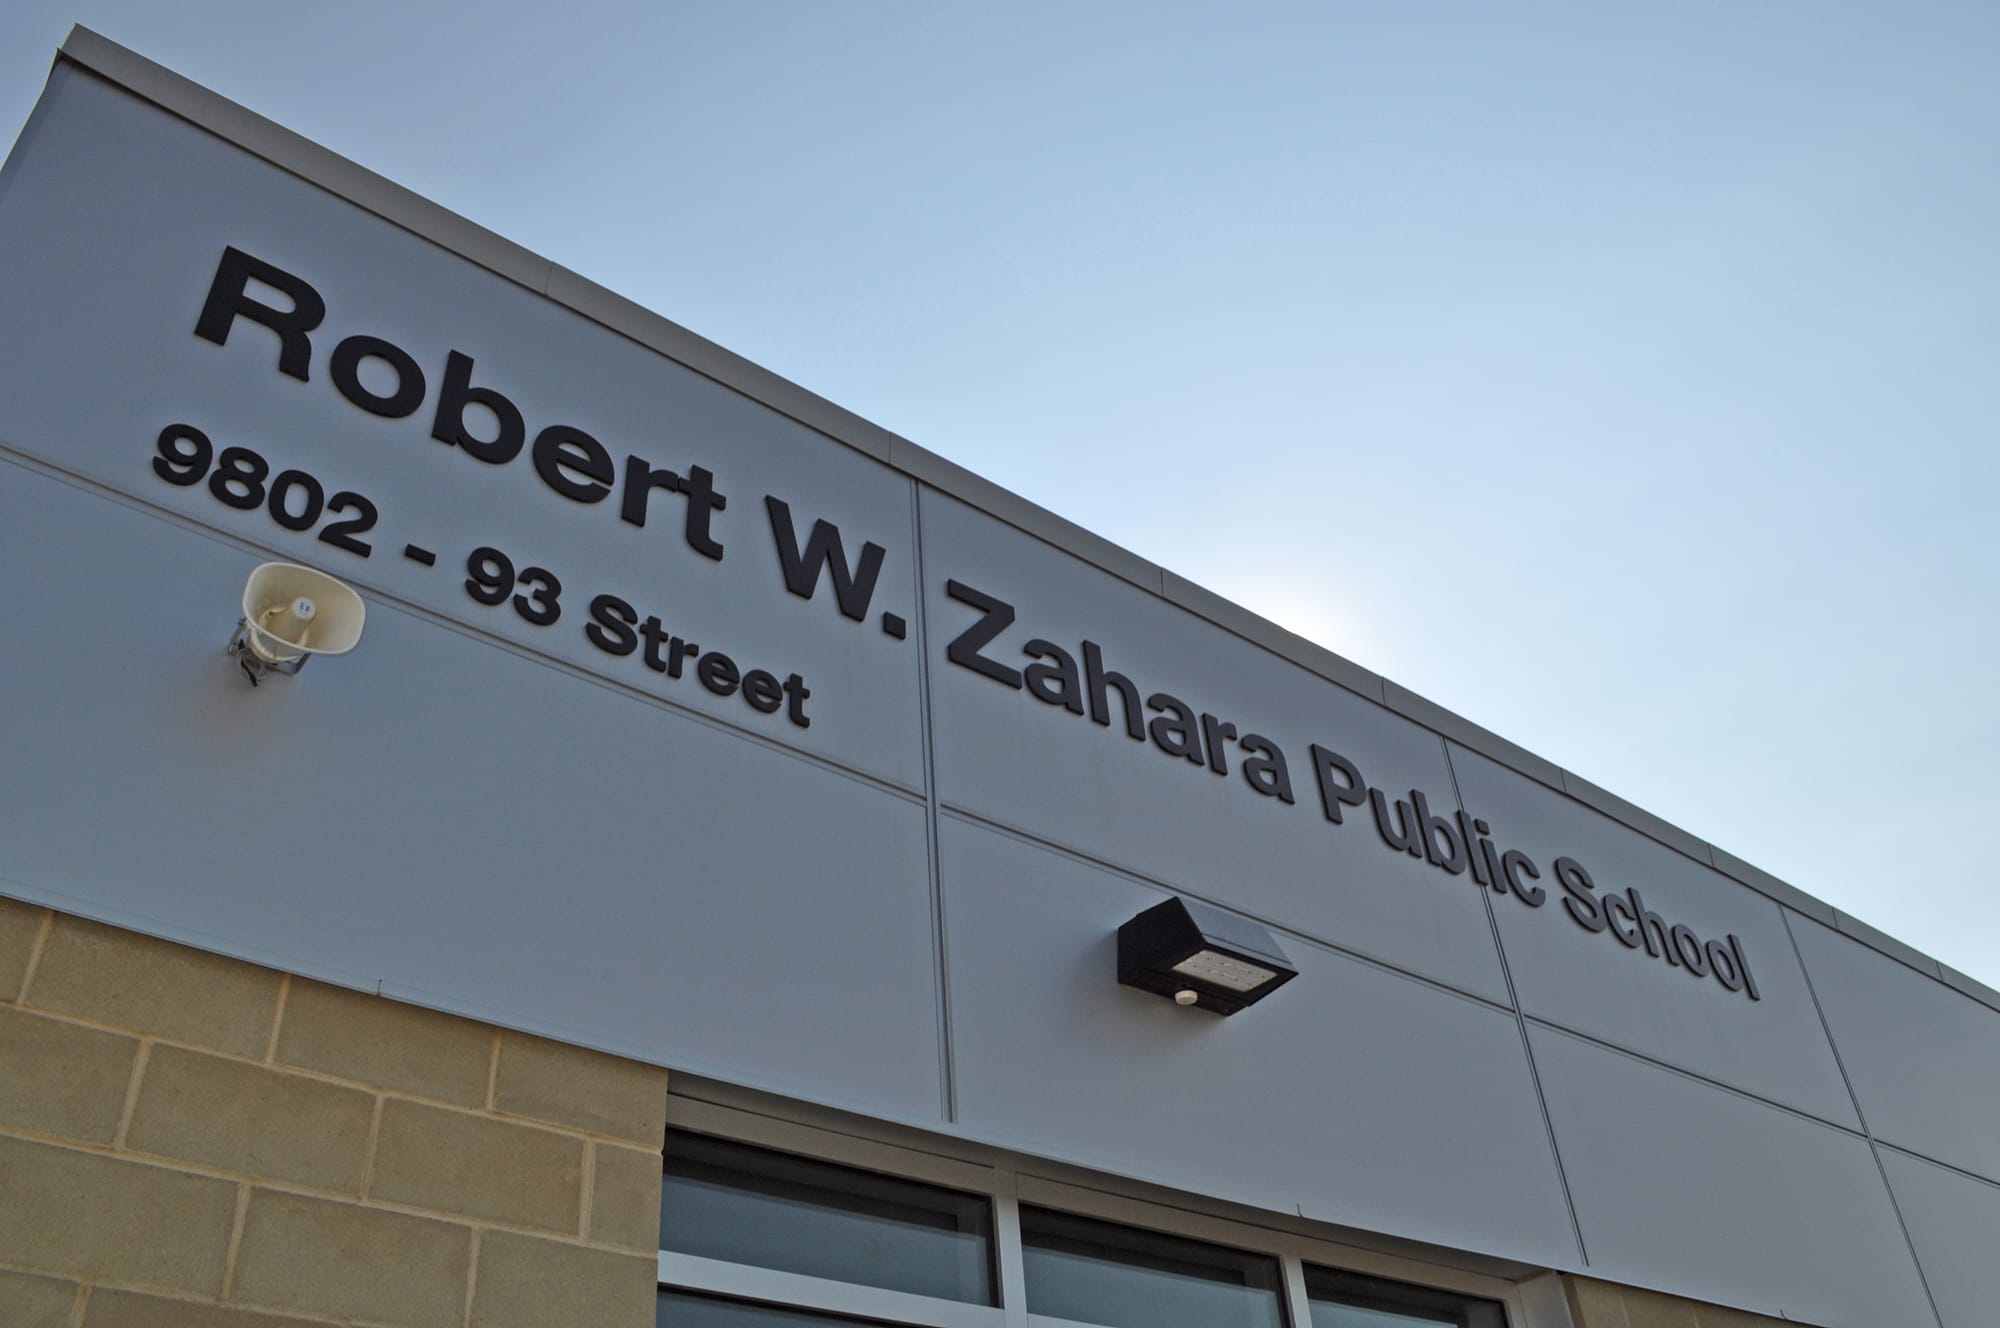 Robert W Zahara Public School exterior signage